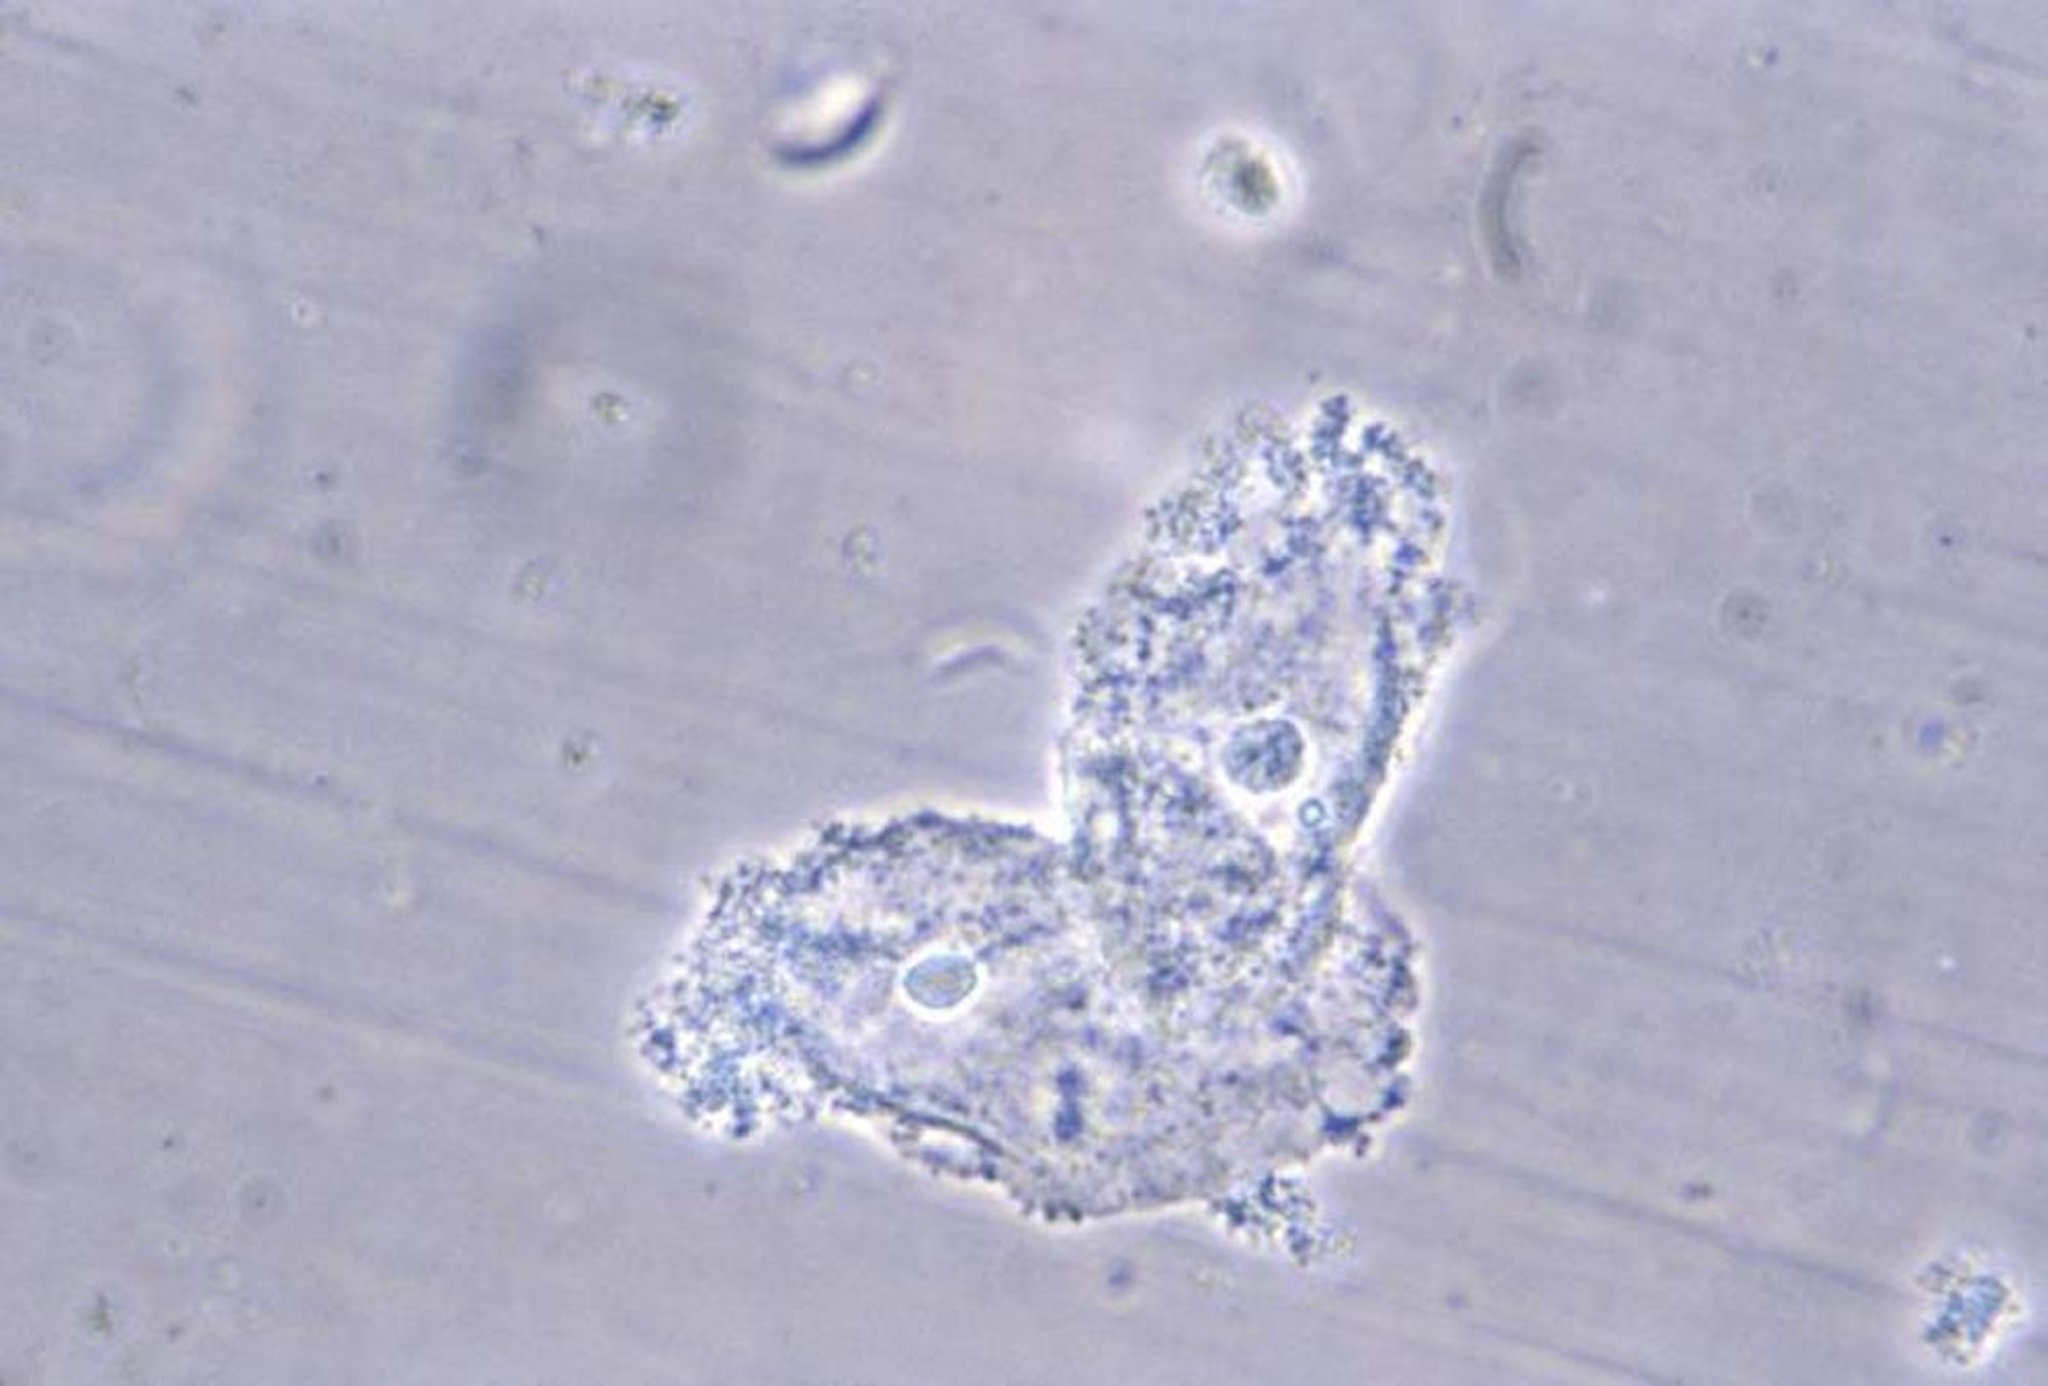 Cellules à inclusions (bactéries adhérentes aux cellules épithéliales masquant les membranes cellulaires)